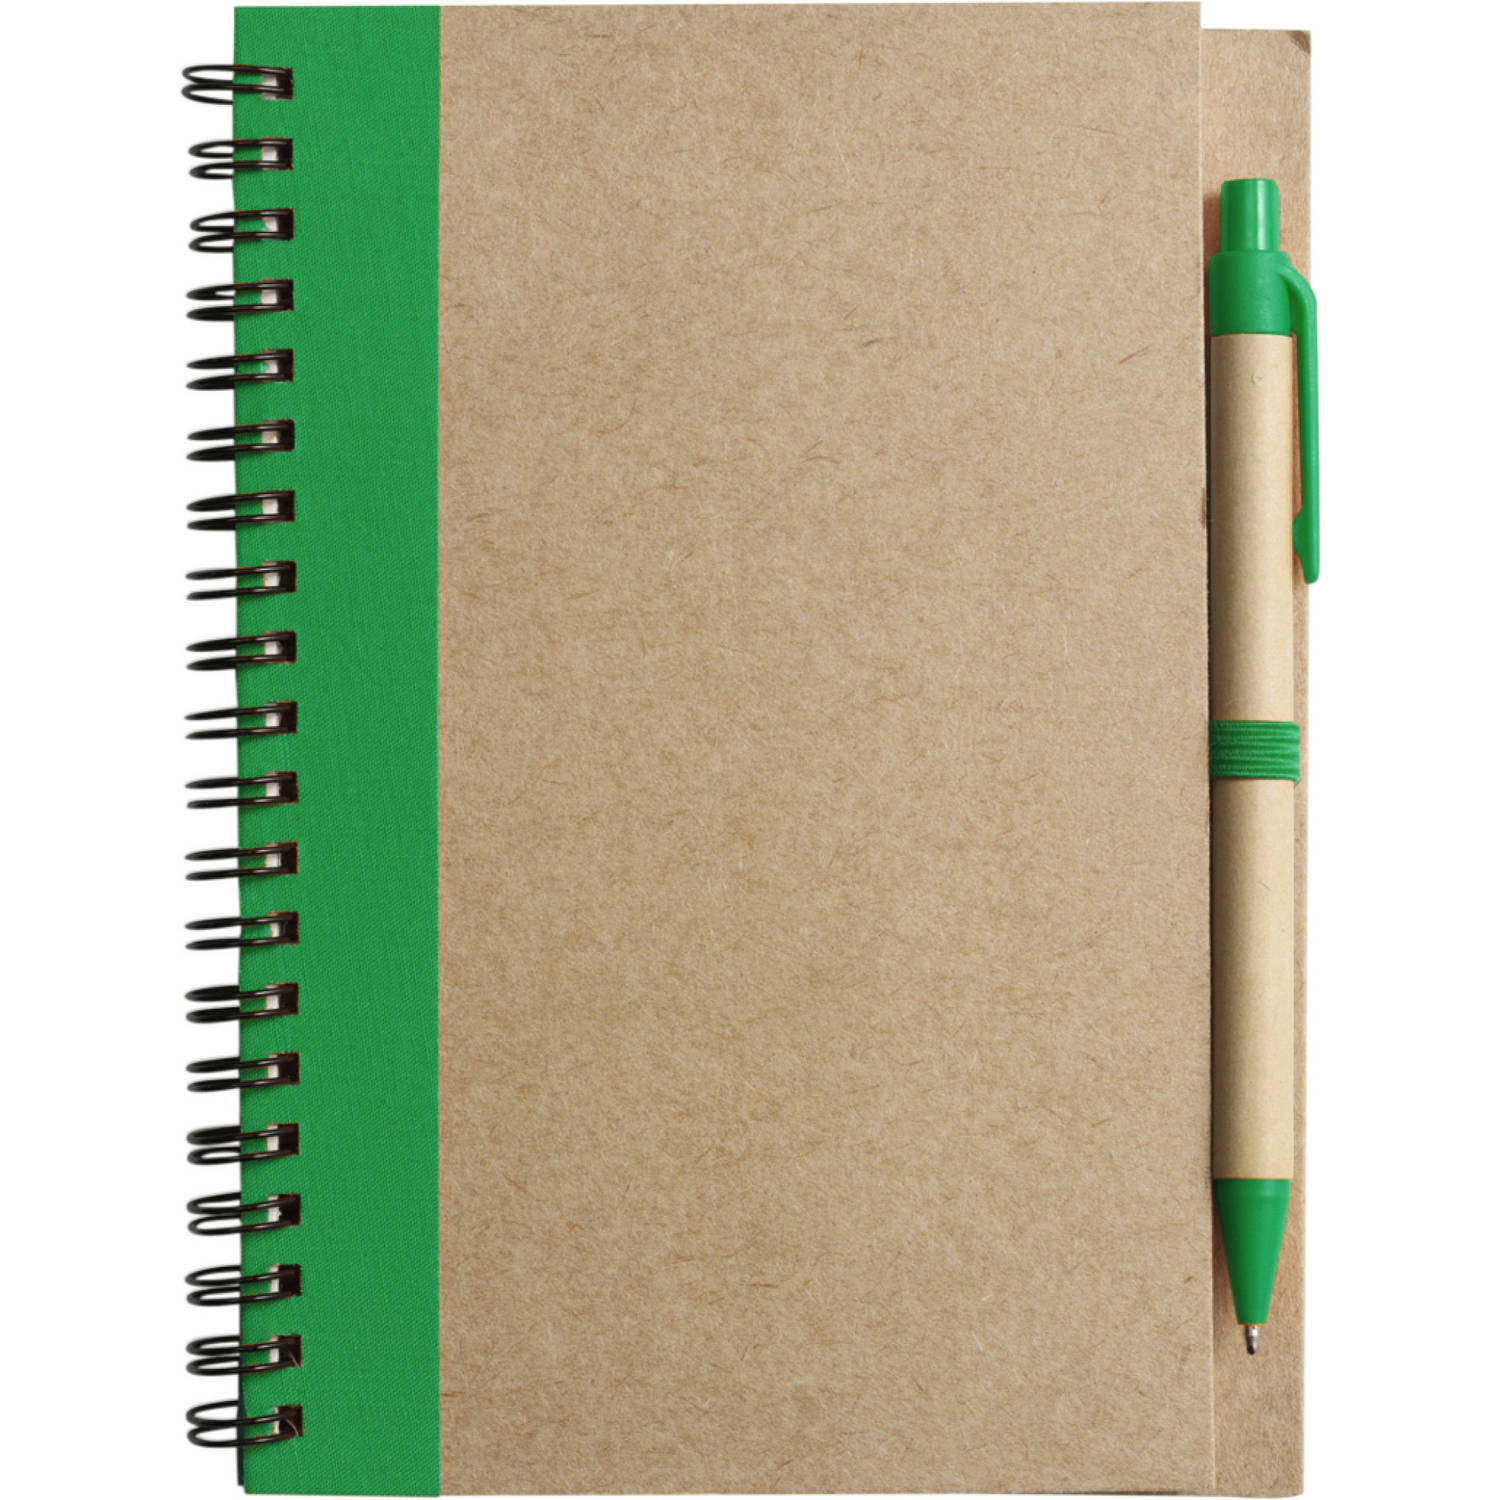 Notitie-opschrijf boekje met balpen harde kaft beige-groen 18x13cm 60blz gelinieerd Notitieboek